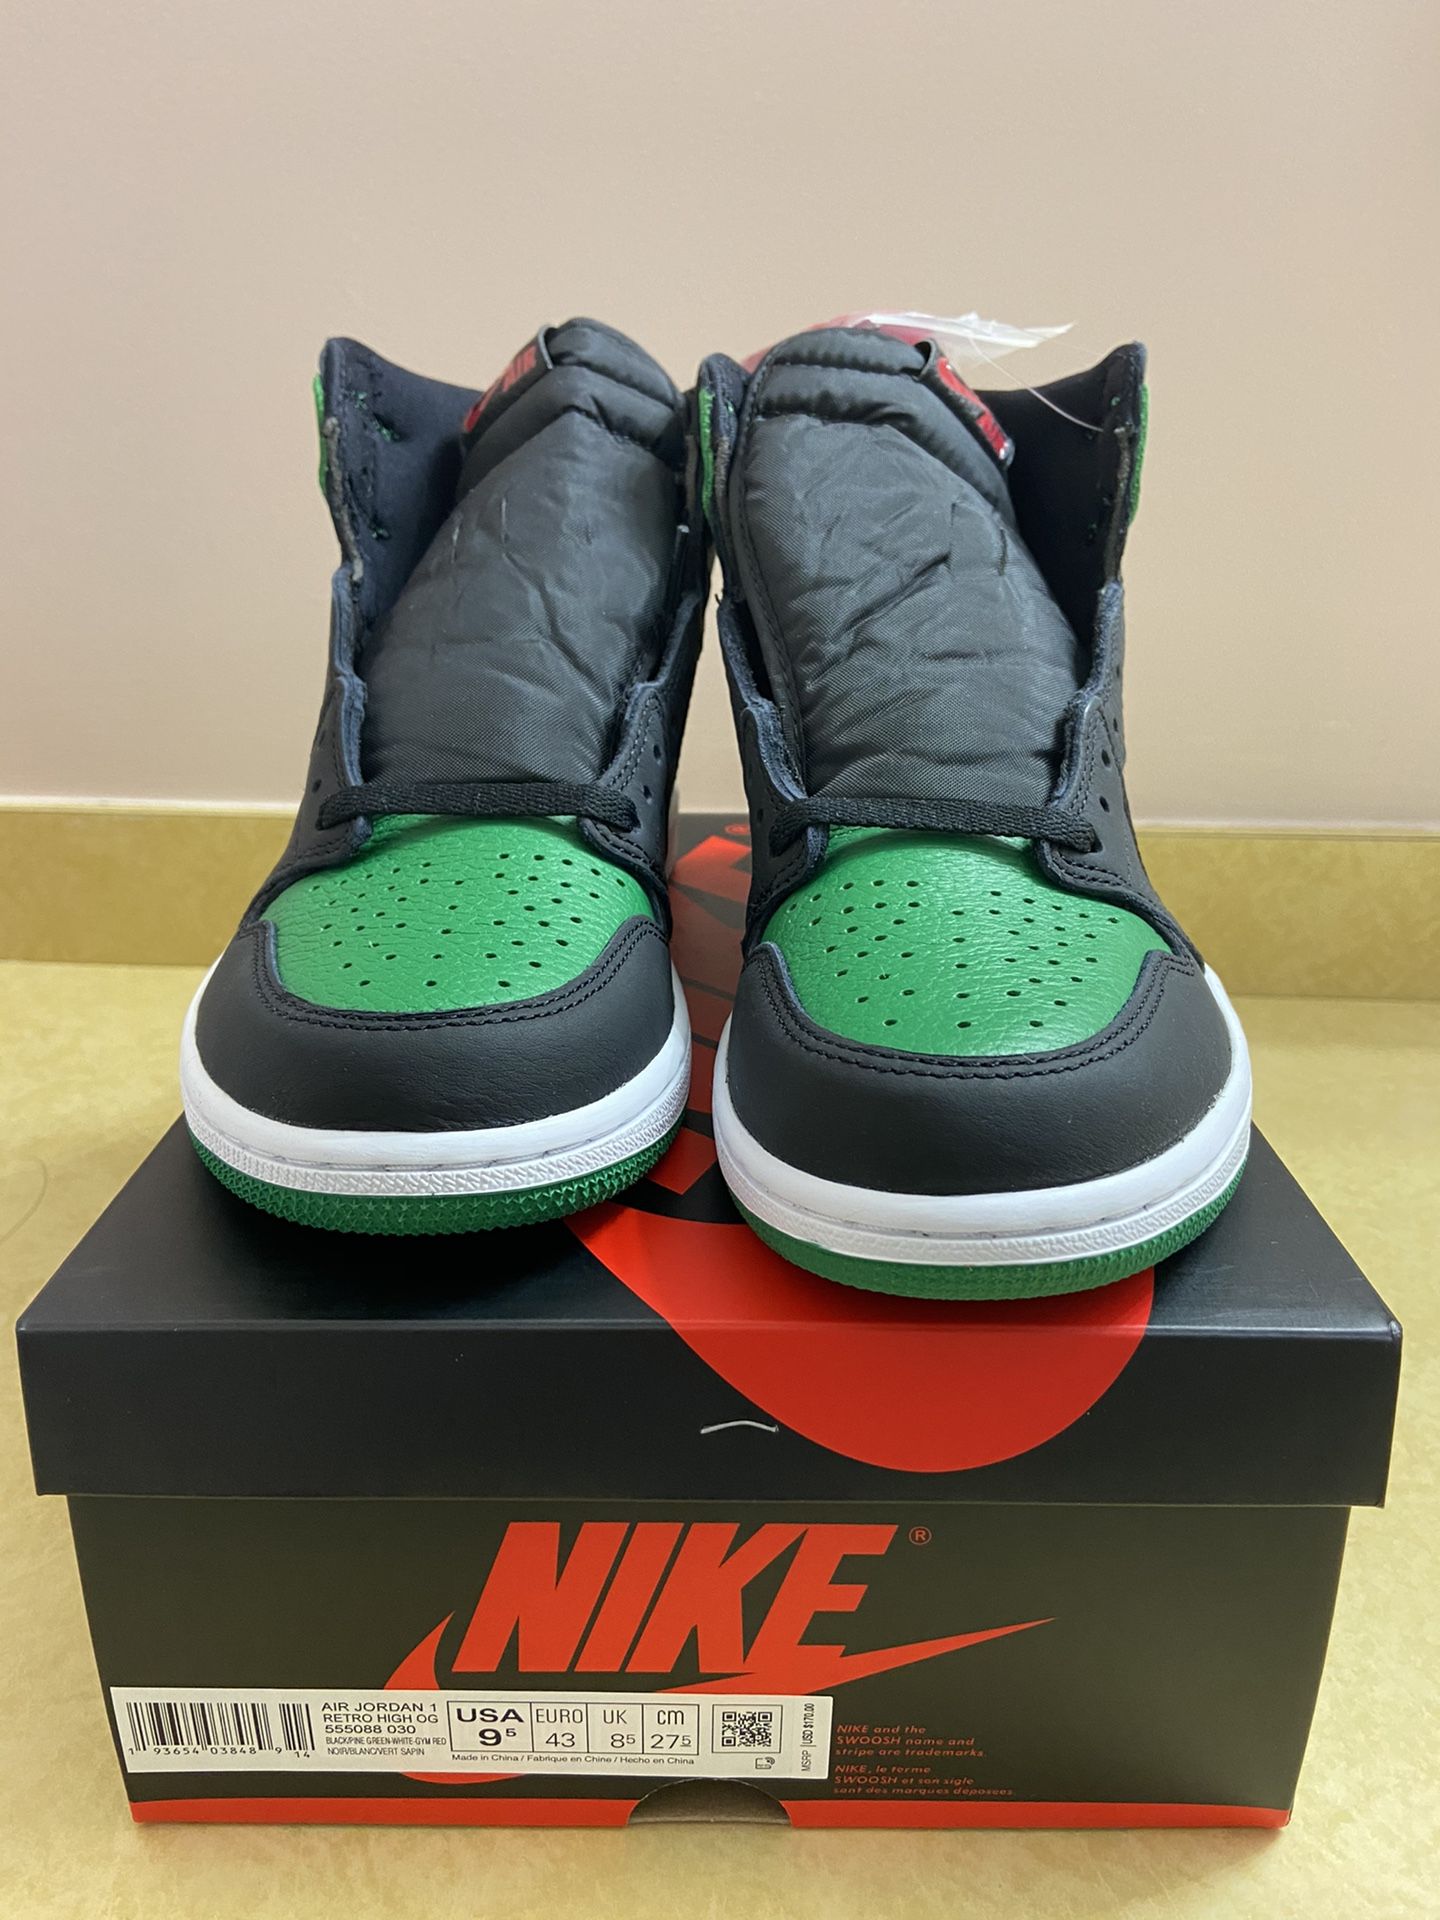 Air Jordan 1 pine green 2.0 NEW size 9.5 Retail price